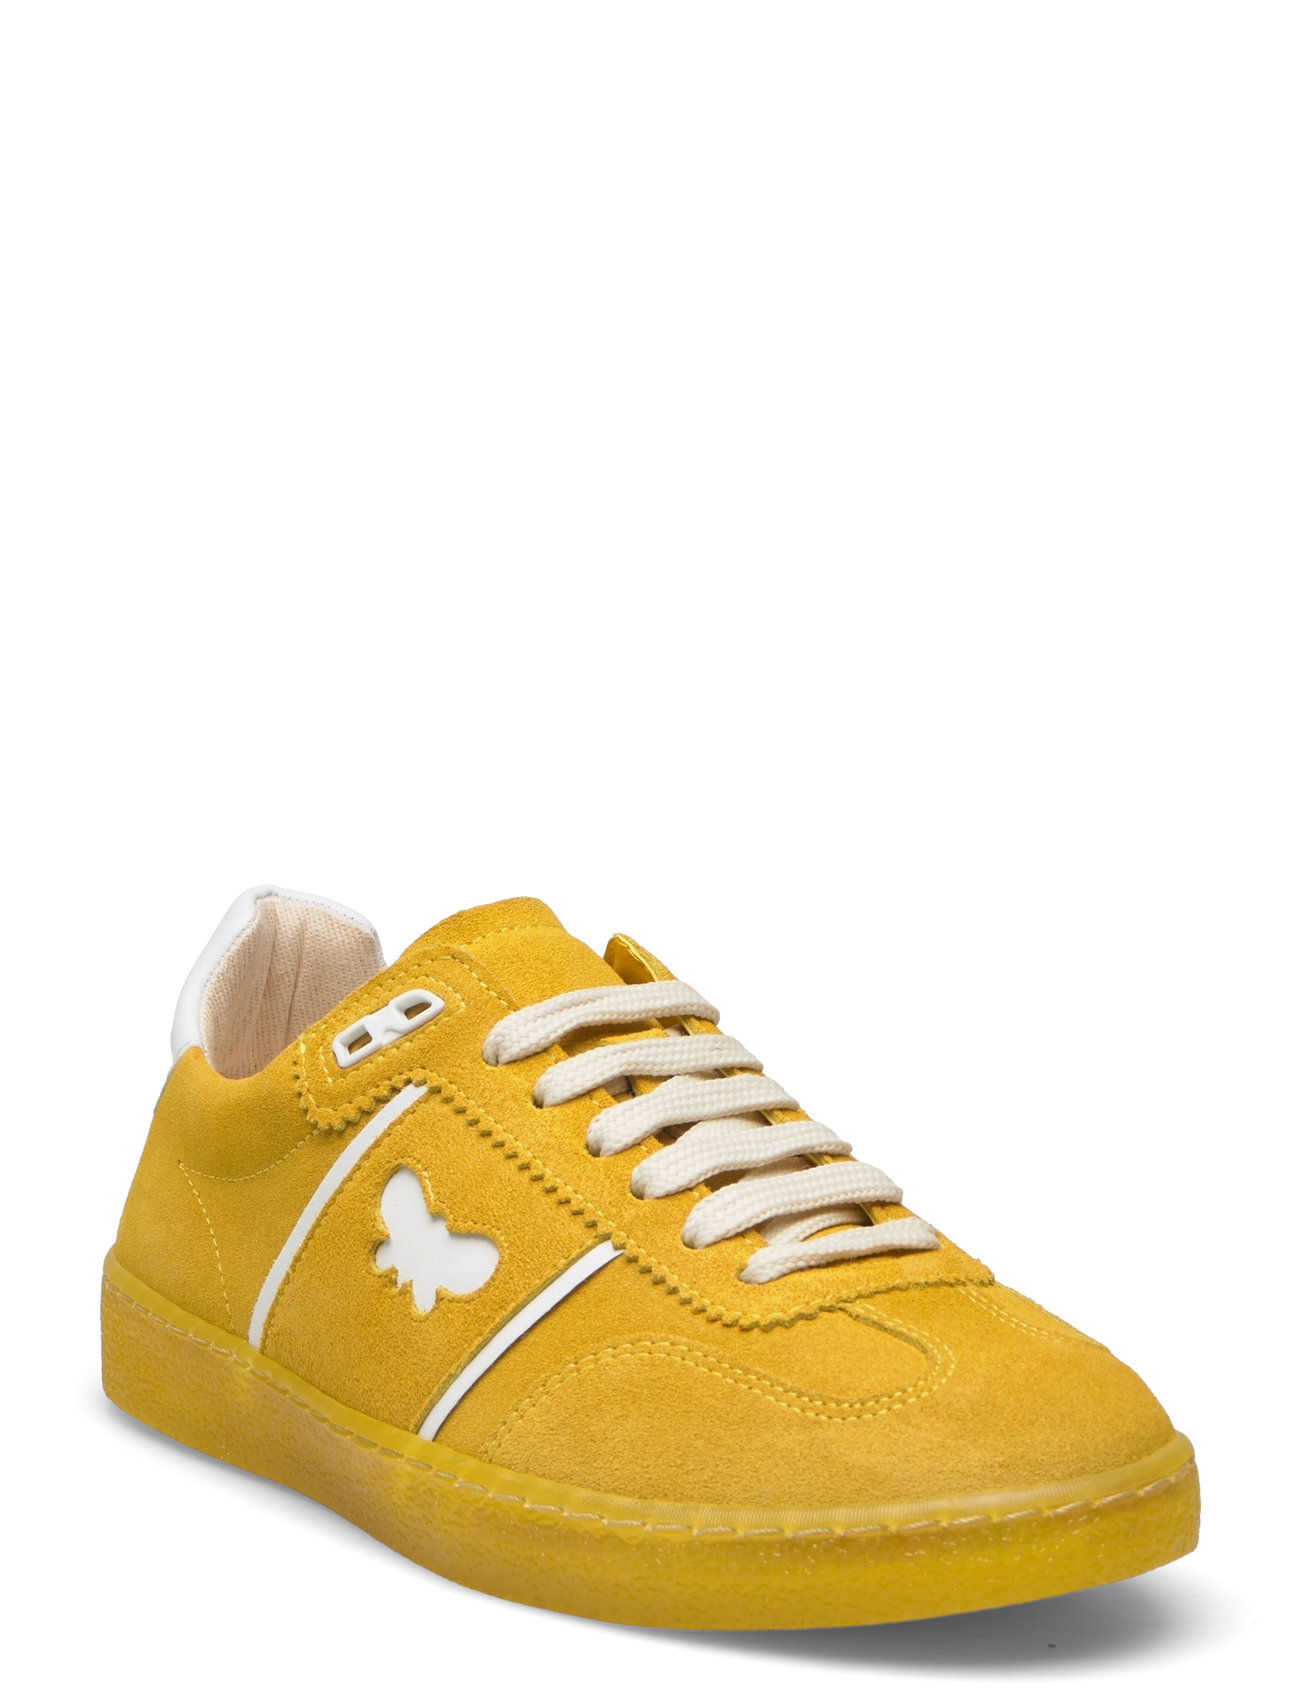 Pacocolor Designers Sneakers Low-top Sneakers Yellow Weekend Max Mara